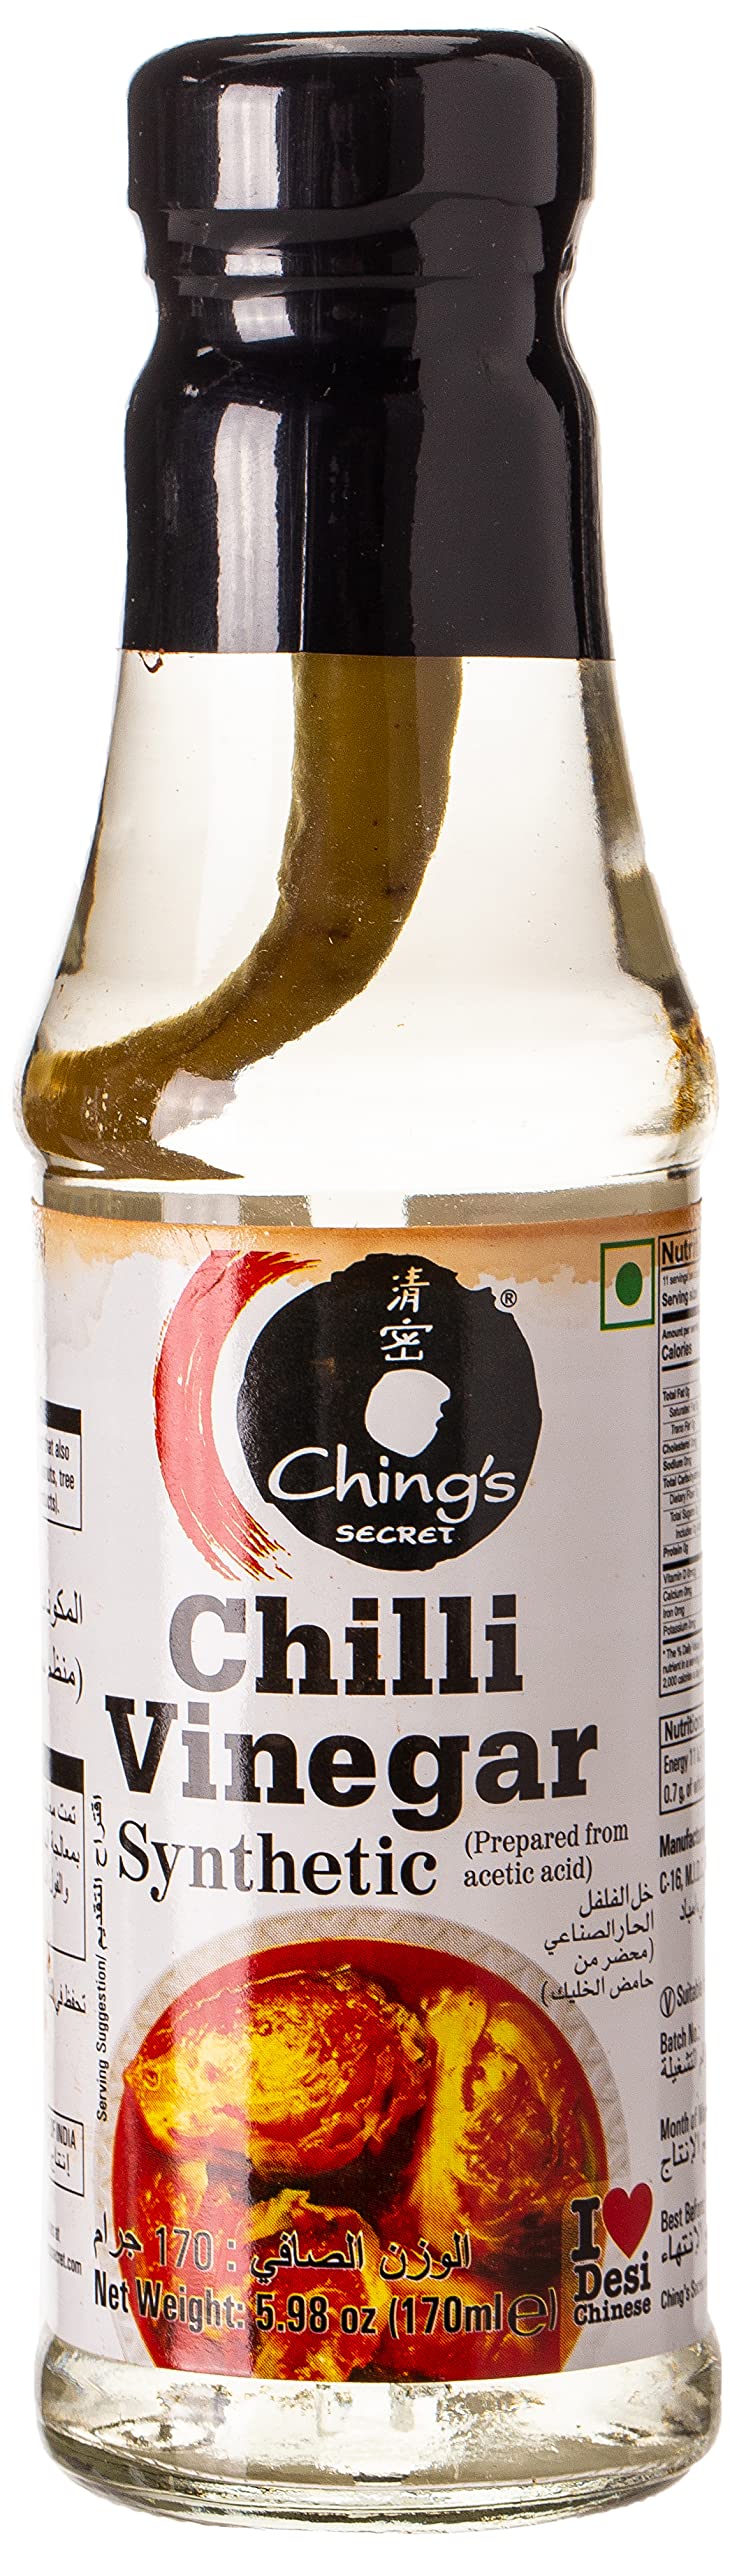 Ching's Secret, Chilli Vinegar Synthetic Sauce, 170 Milliliter(mL)